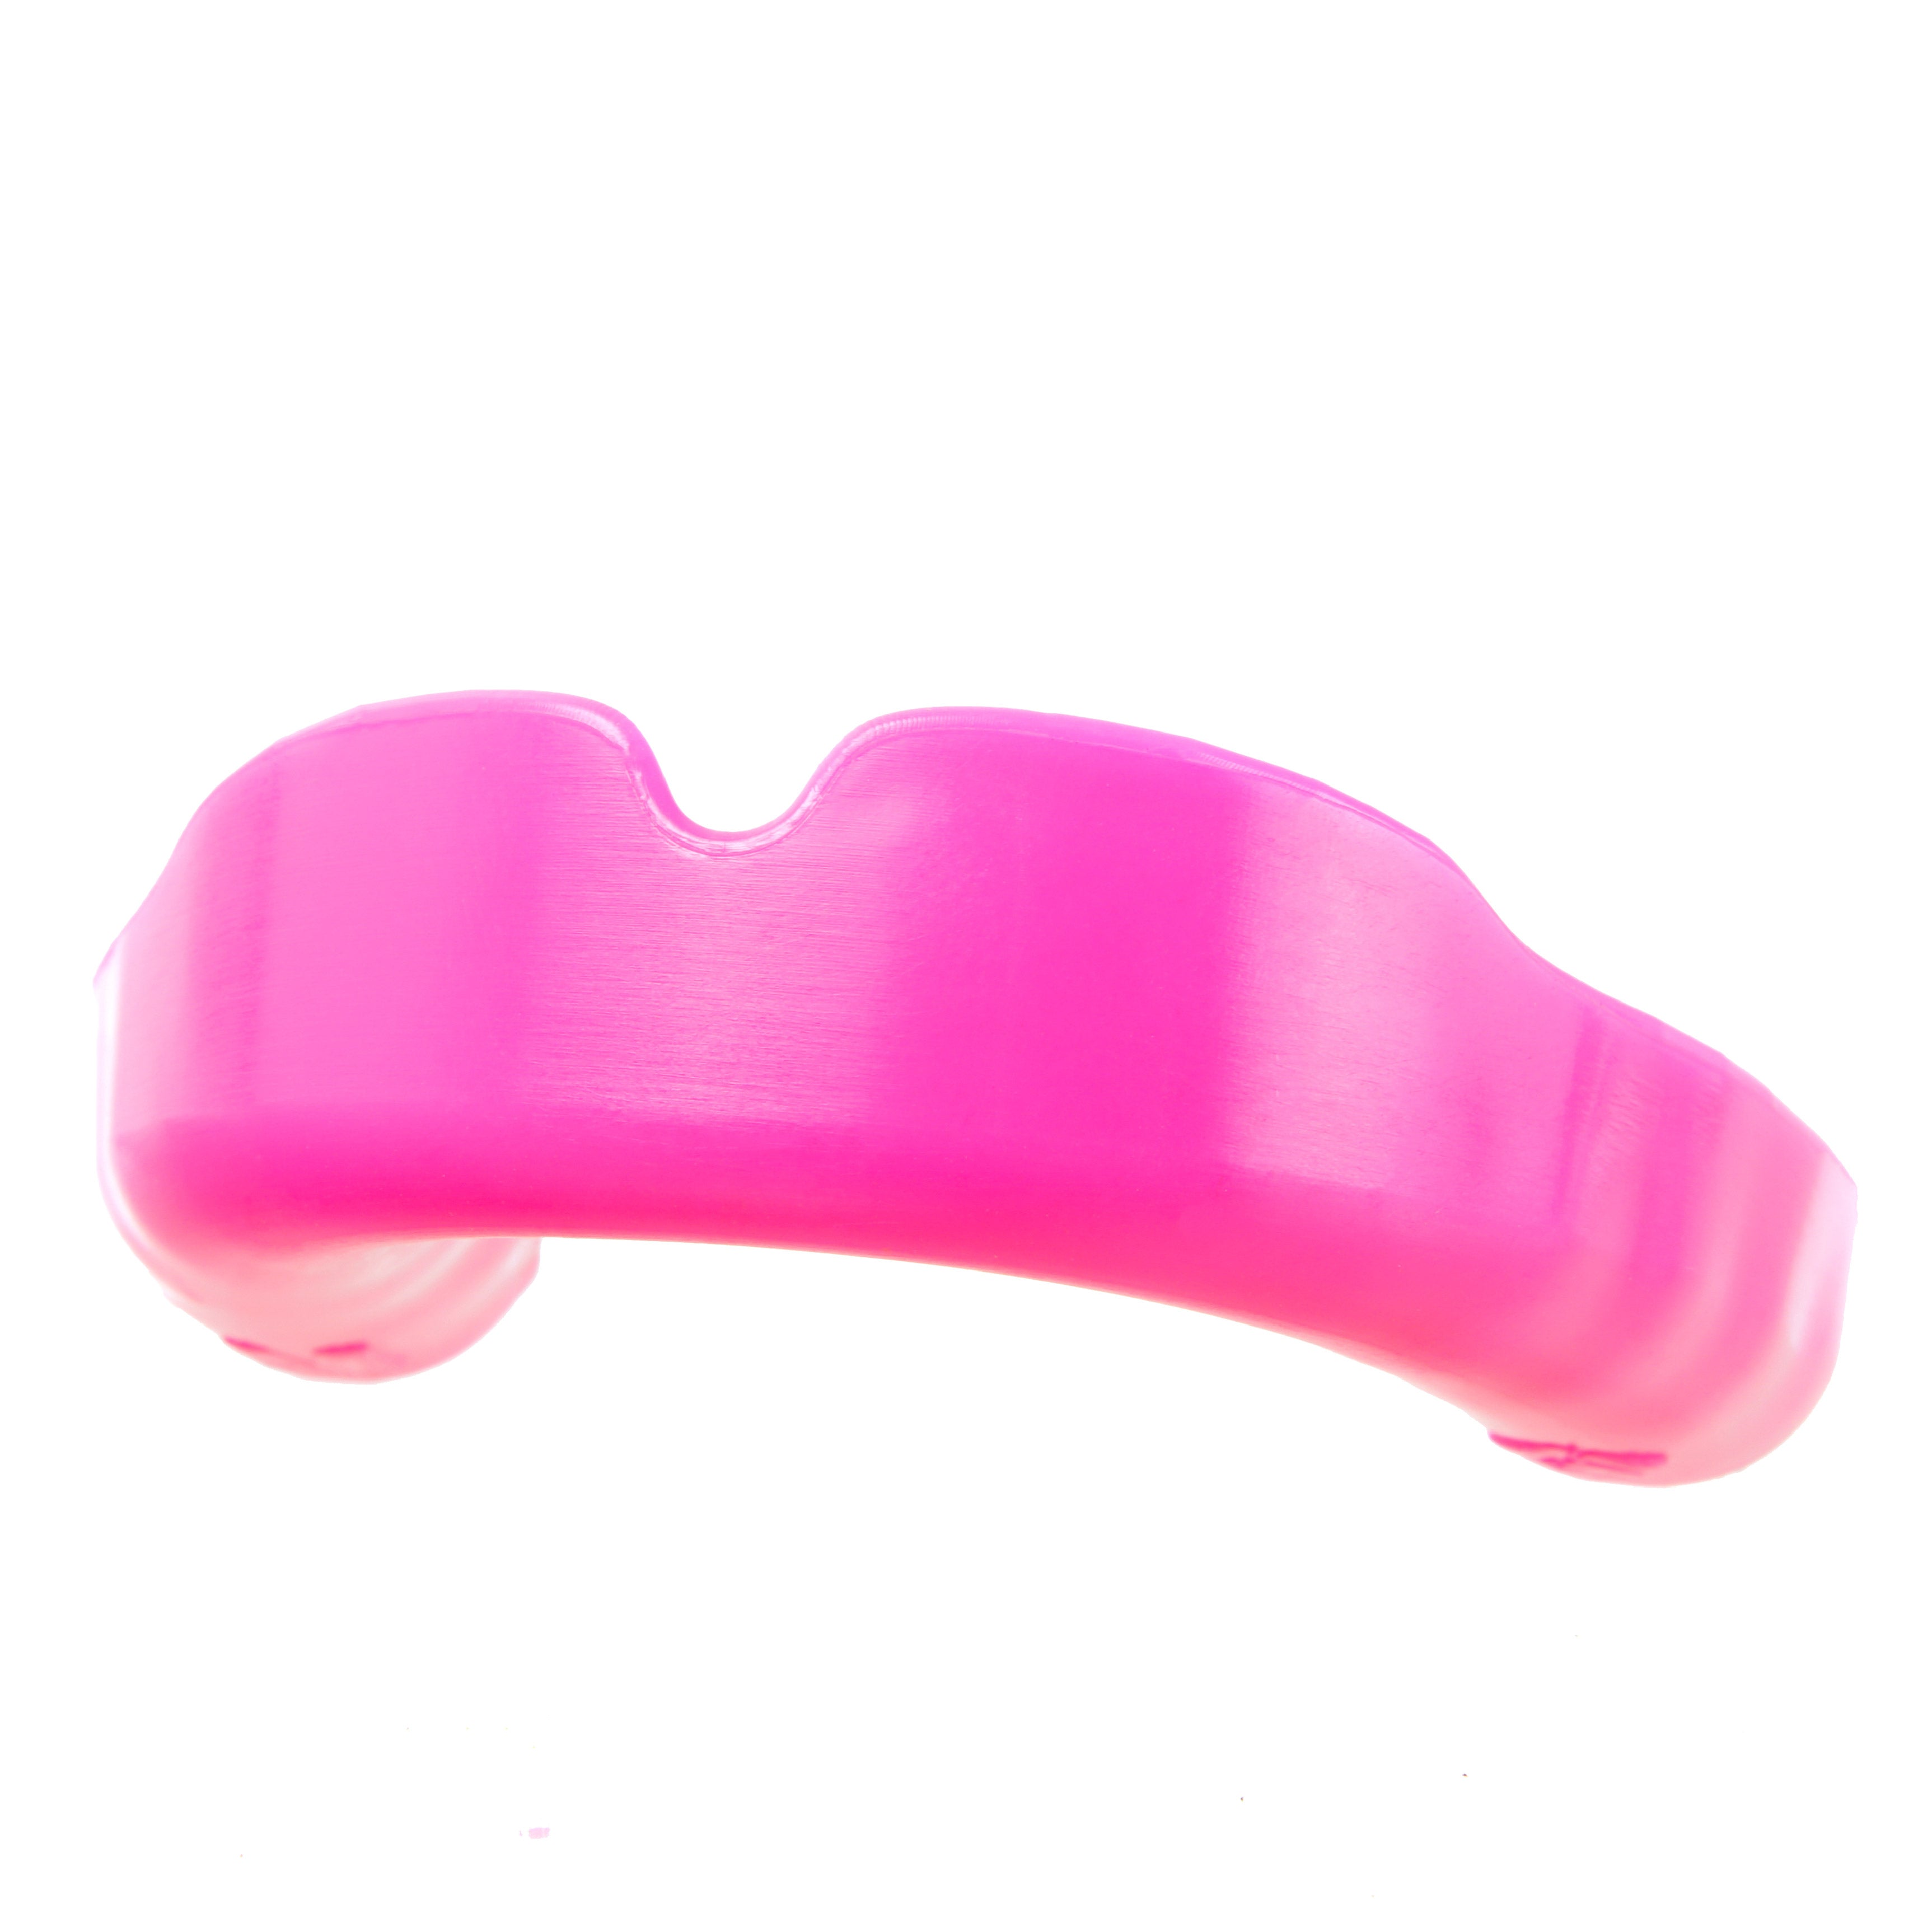 APEX LITE Pink mouthguard